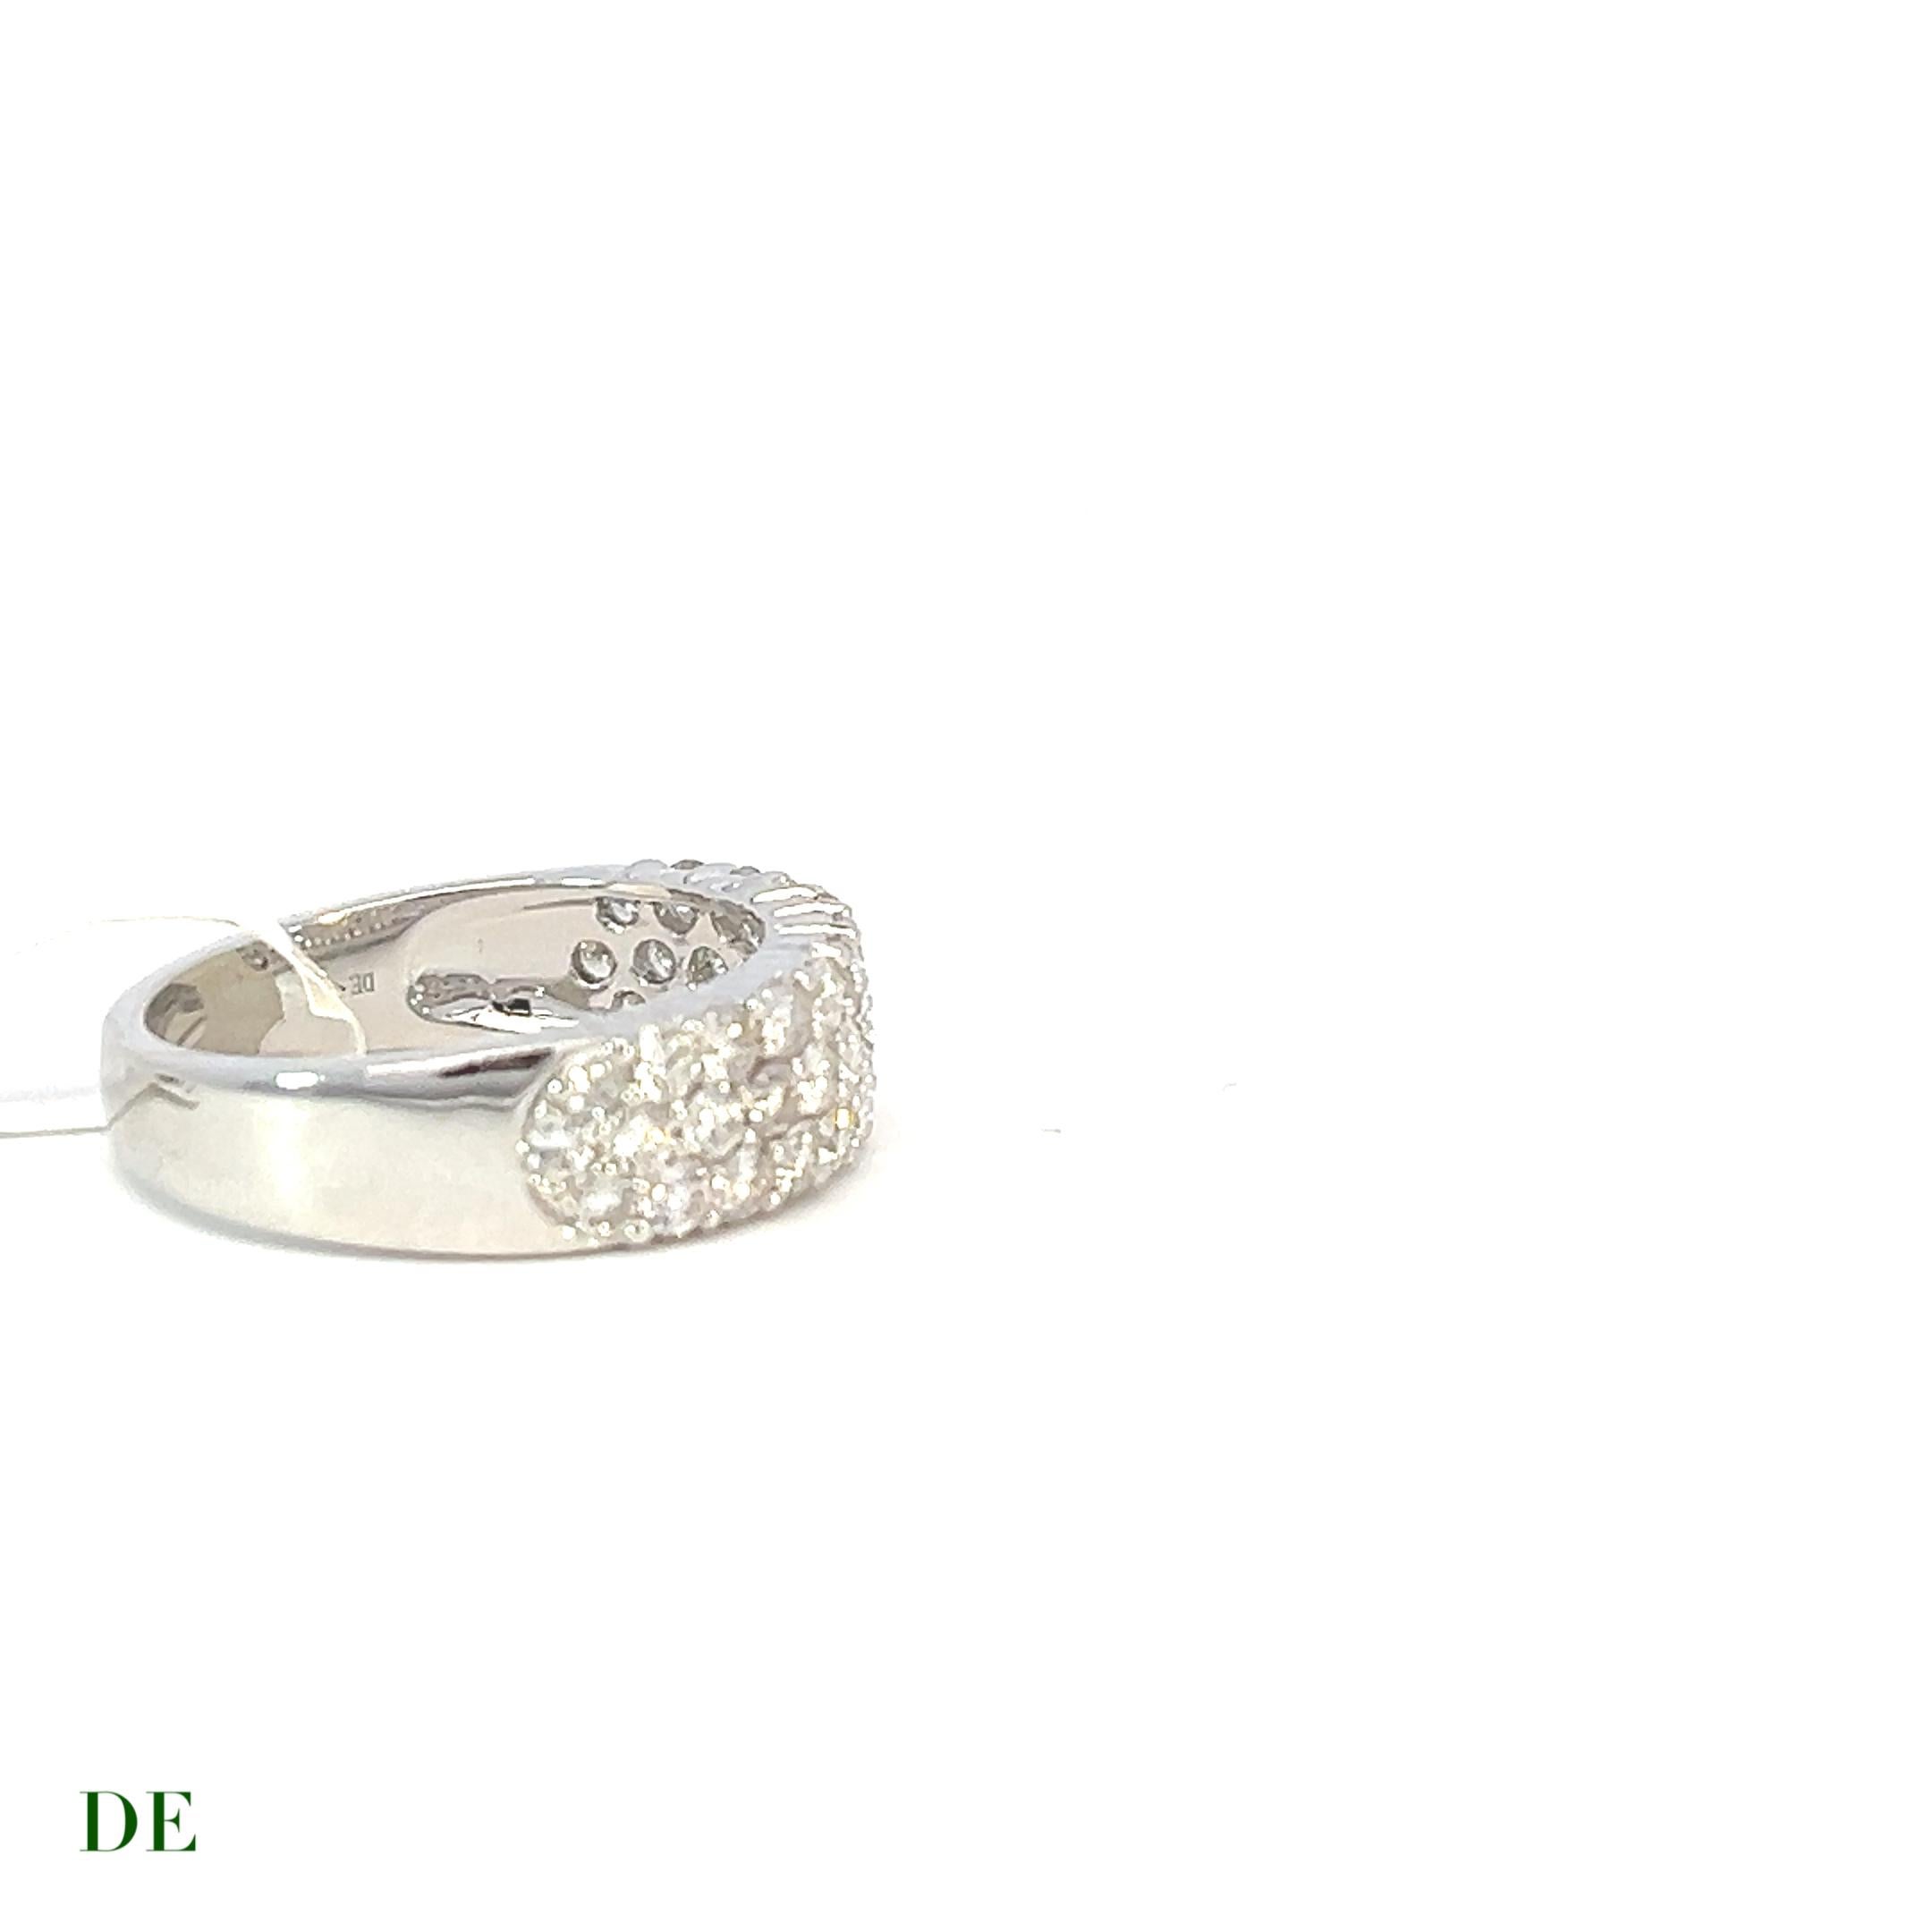 Classic 14k Gold 1,396 Karat Elegantes Cluster Diamantband Ring

Der Classic 14k Gold 1.396 Carat Elegant Cluster Diamond Band Ring besticht durch seine Eleganz und zeitlose Schönheit. Dieses exquisite Schmuckstück zeigt eine atemberaubende